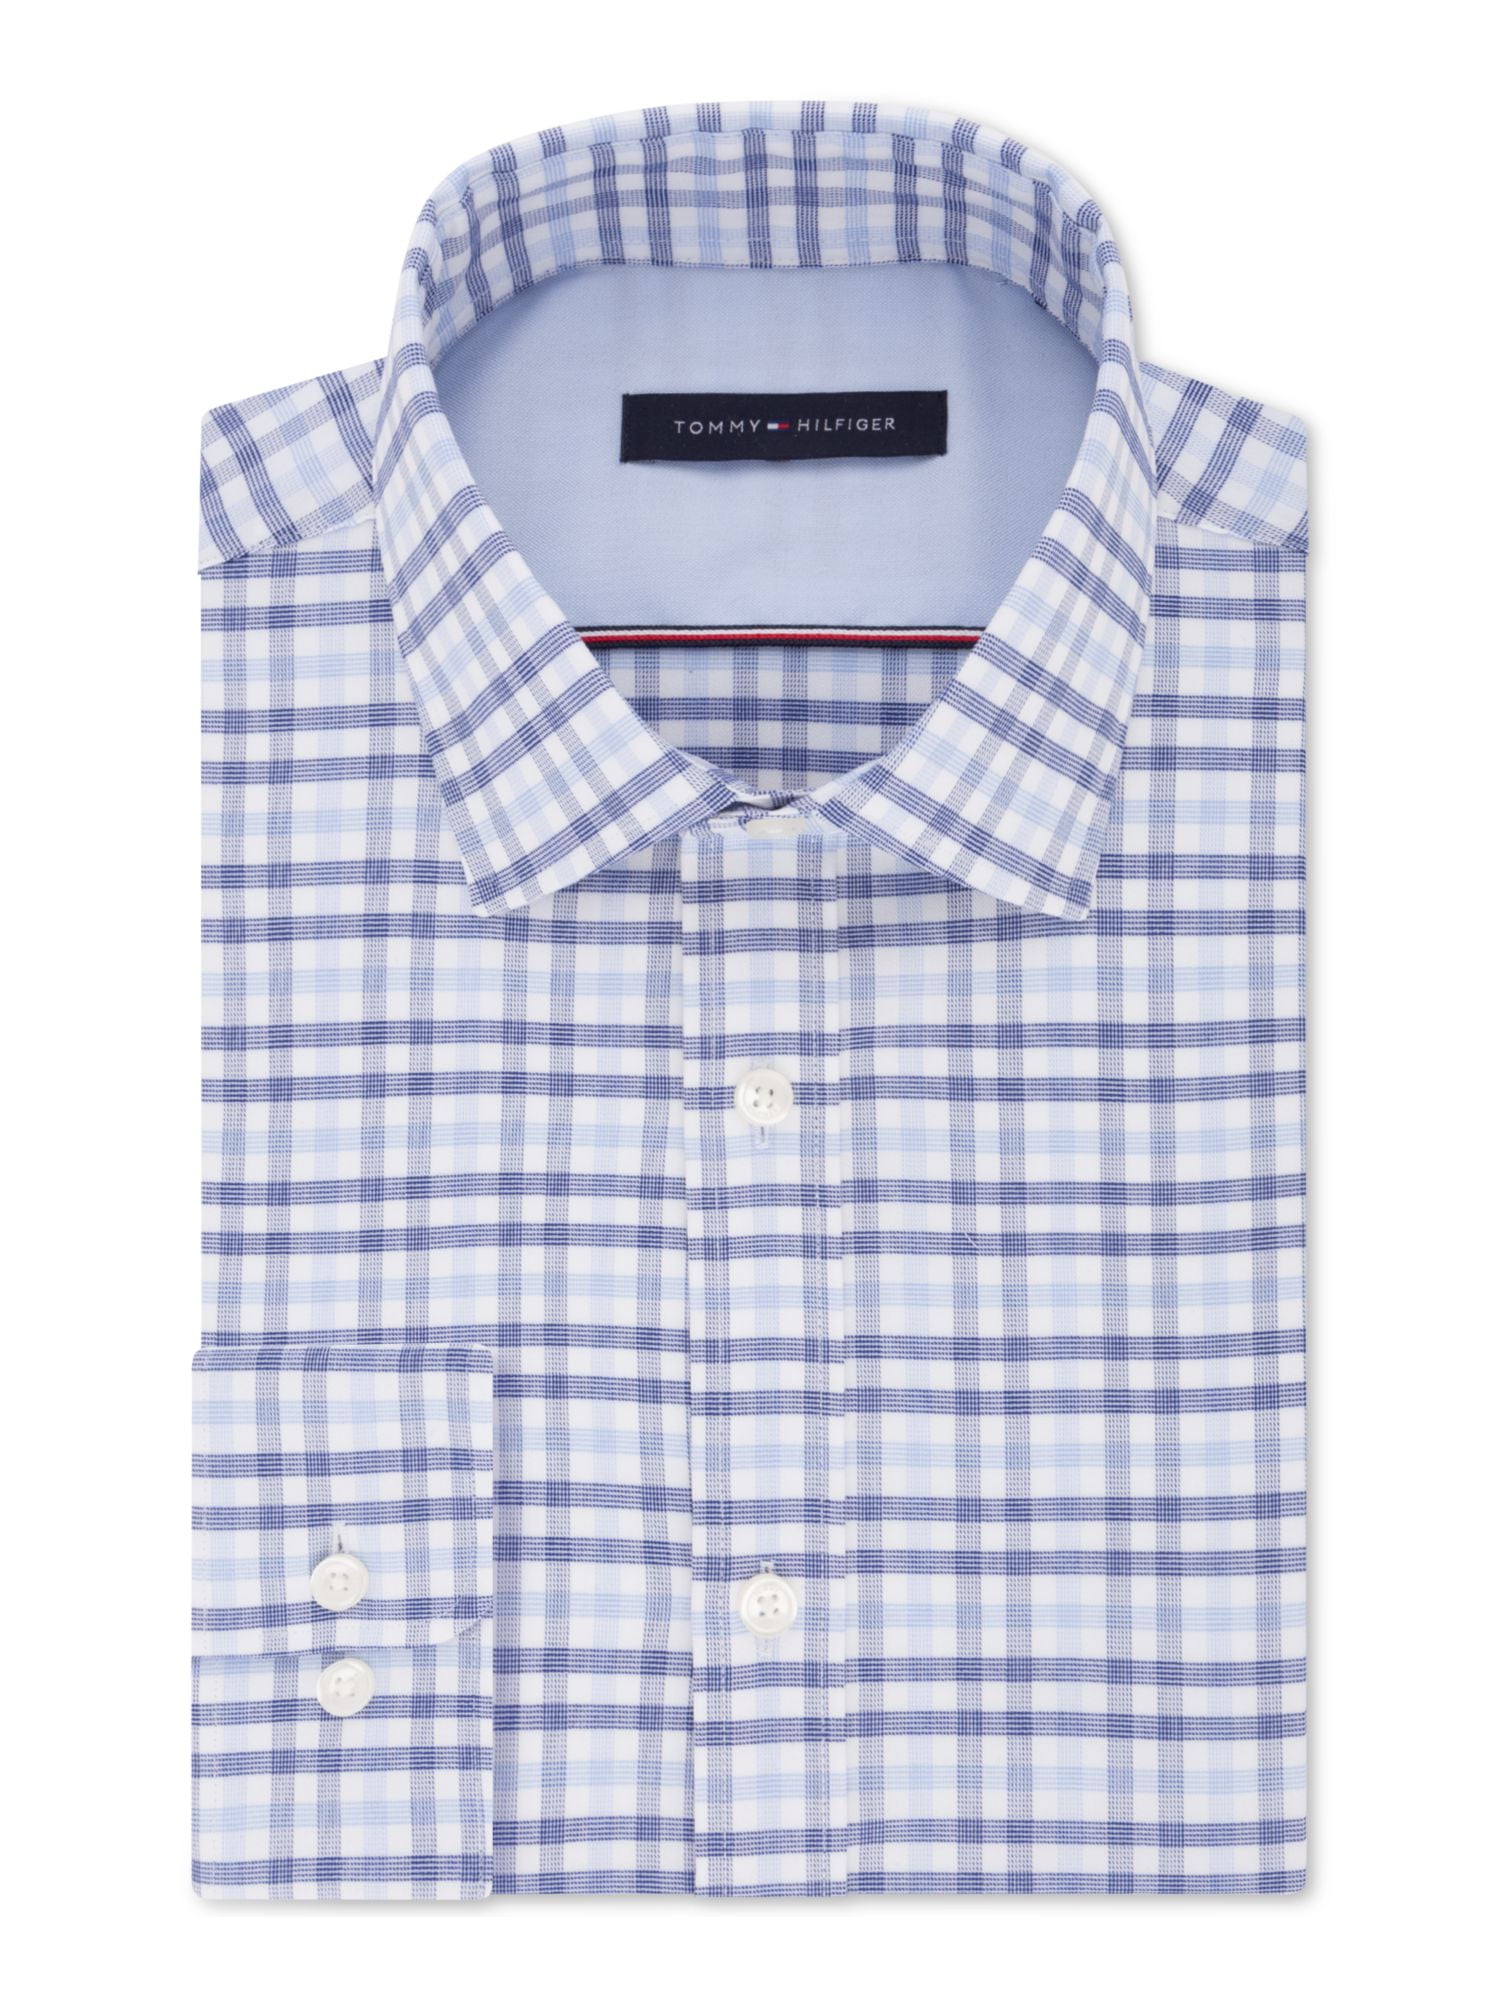 Blue Tommy Hilfiger Slim Fit Heritage Oxford Dress Shirt 14.5 Neck 32/33 Sleeve